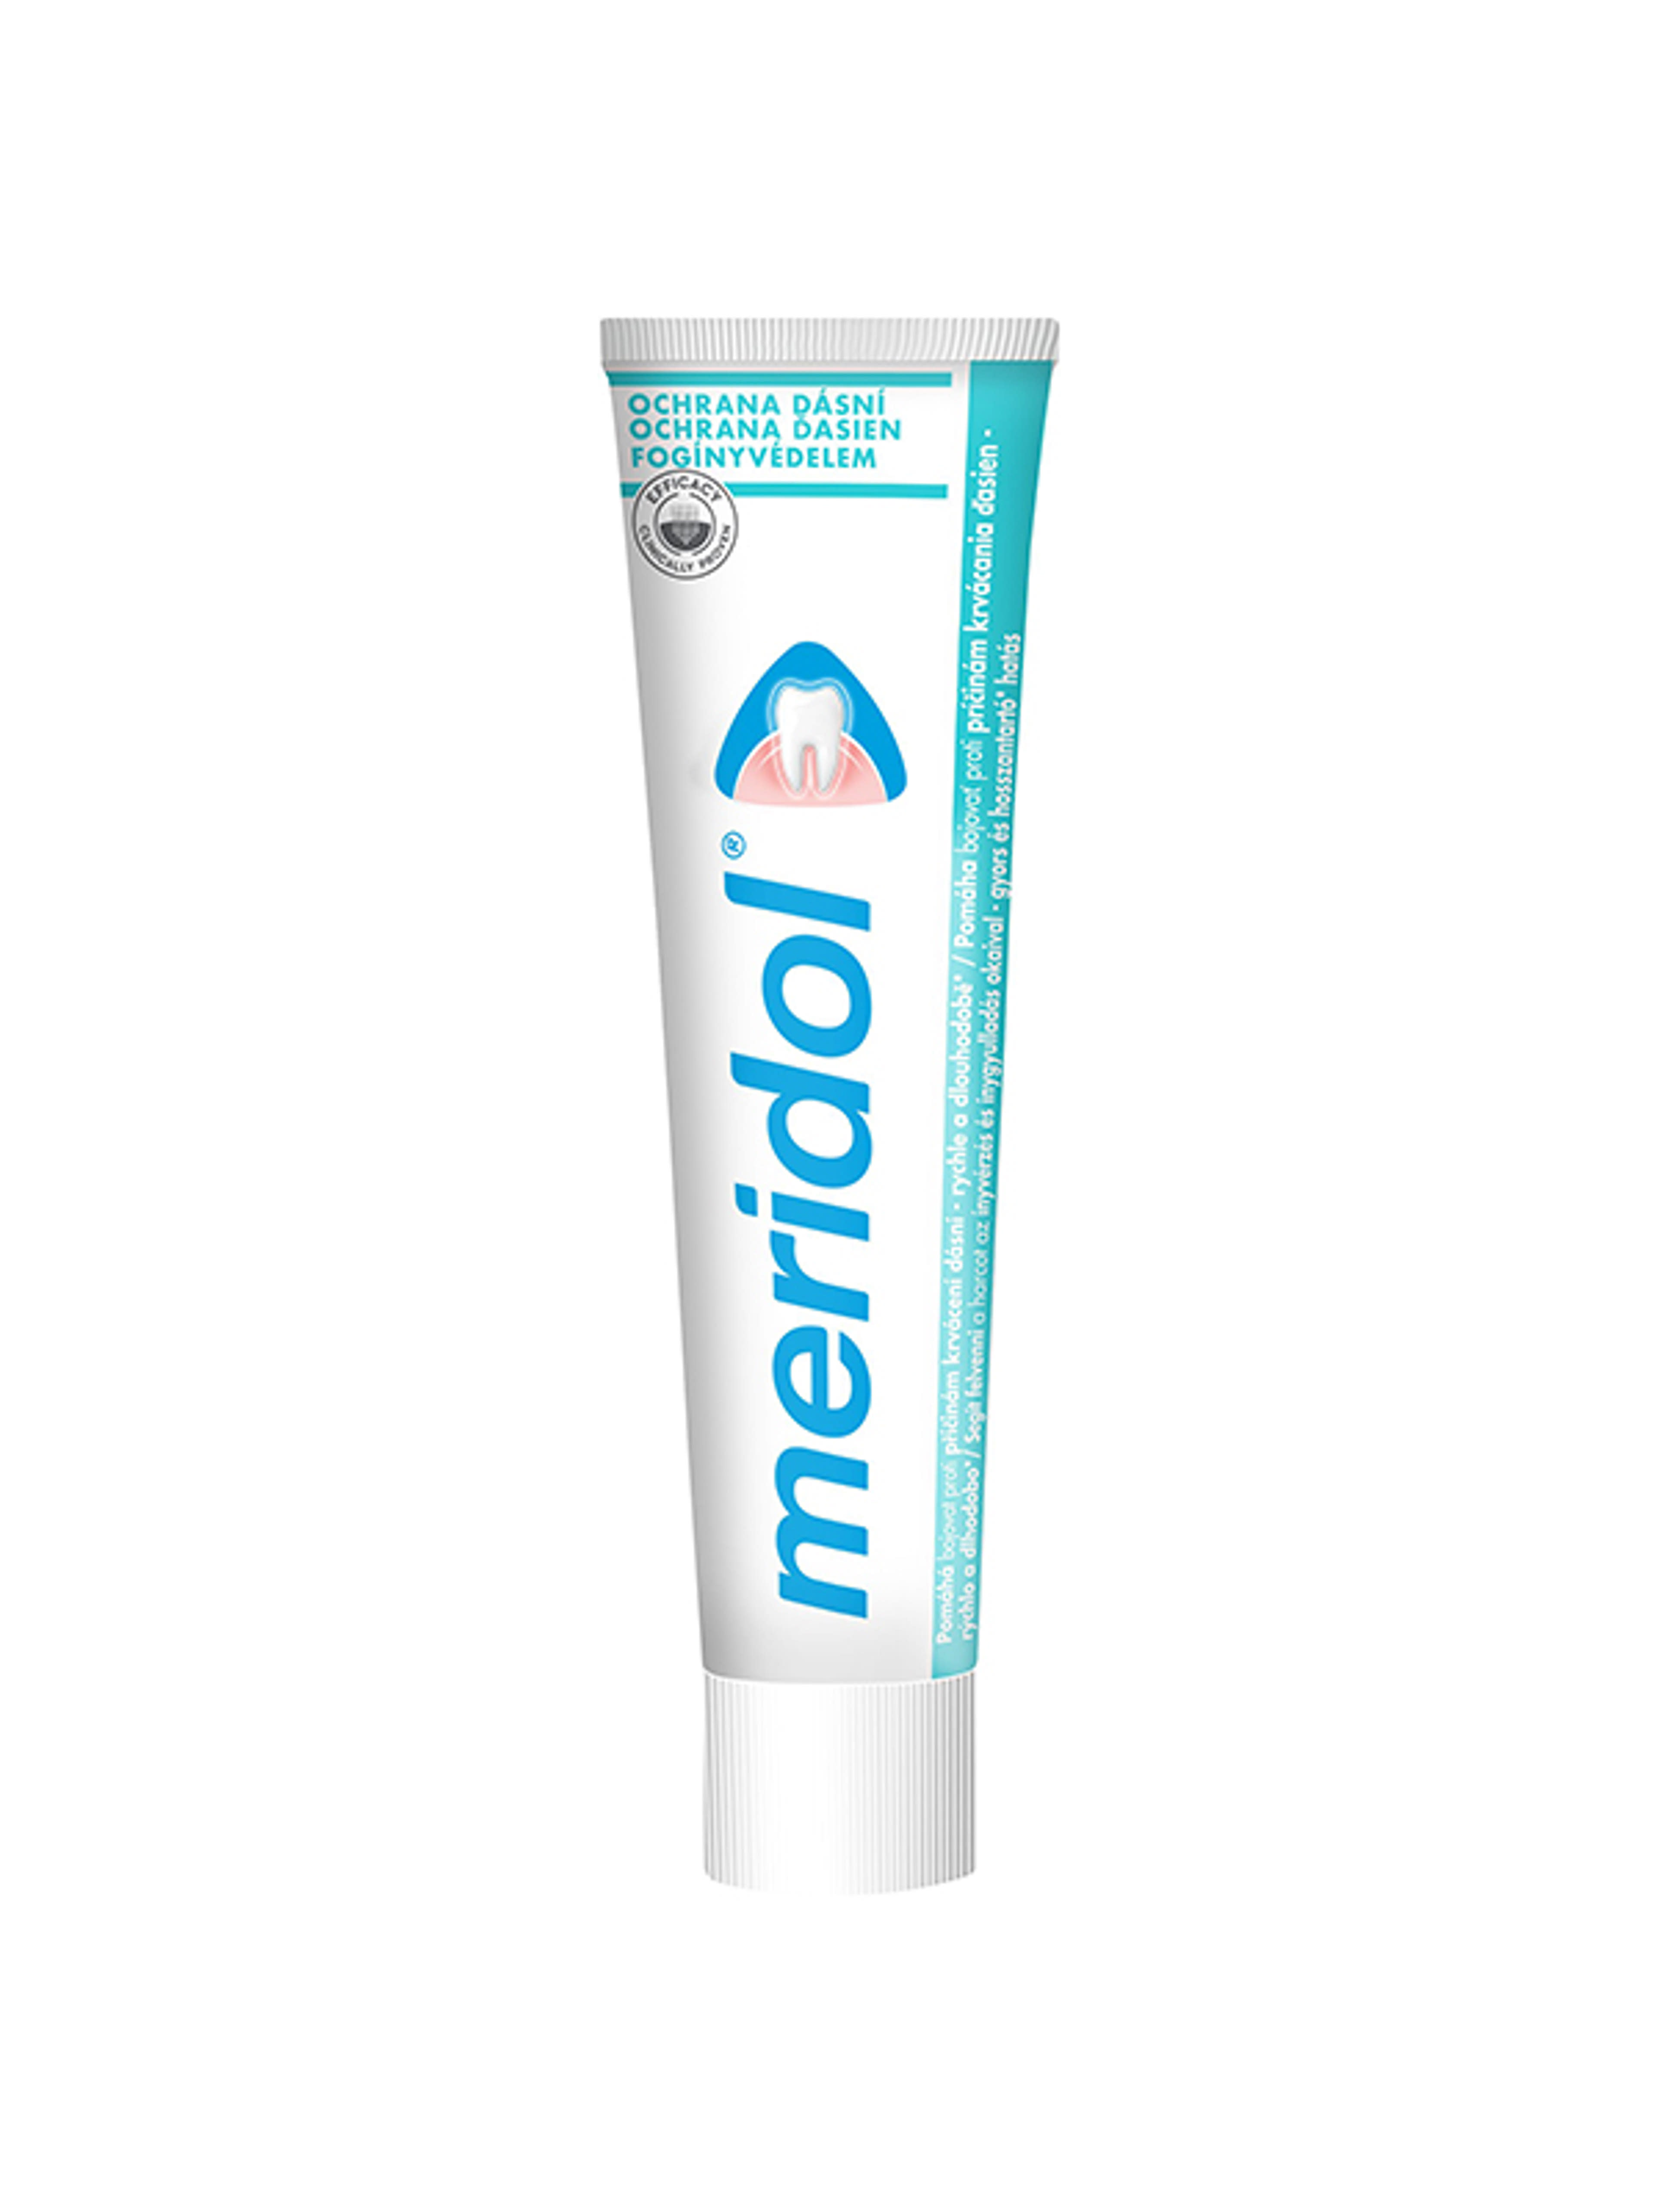 Meridol Fogínyvédelem fogkrém - 75 ml-13